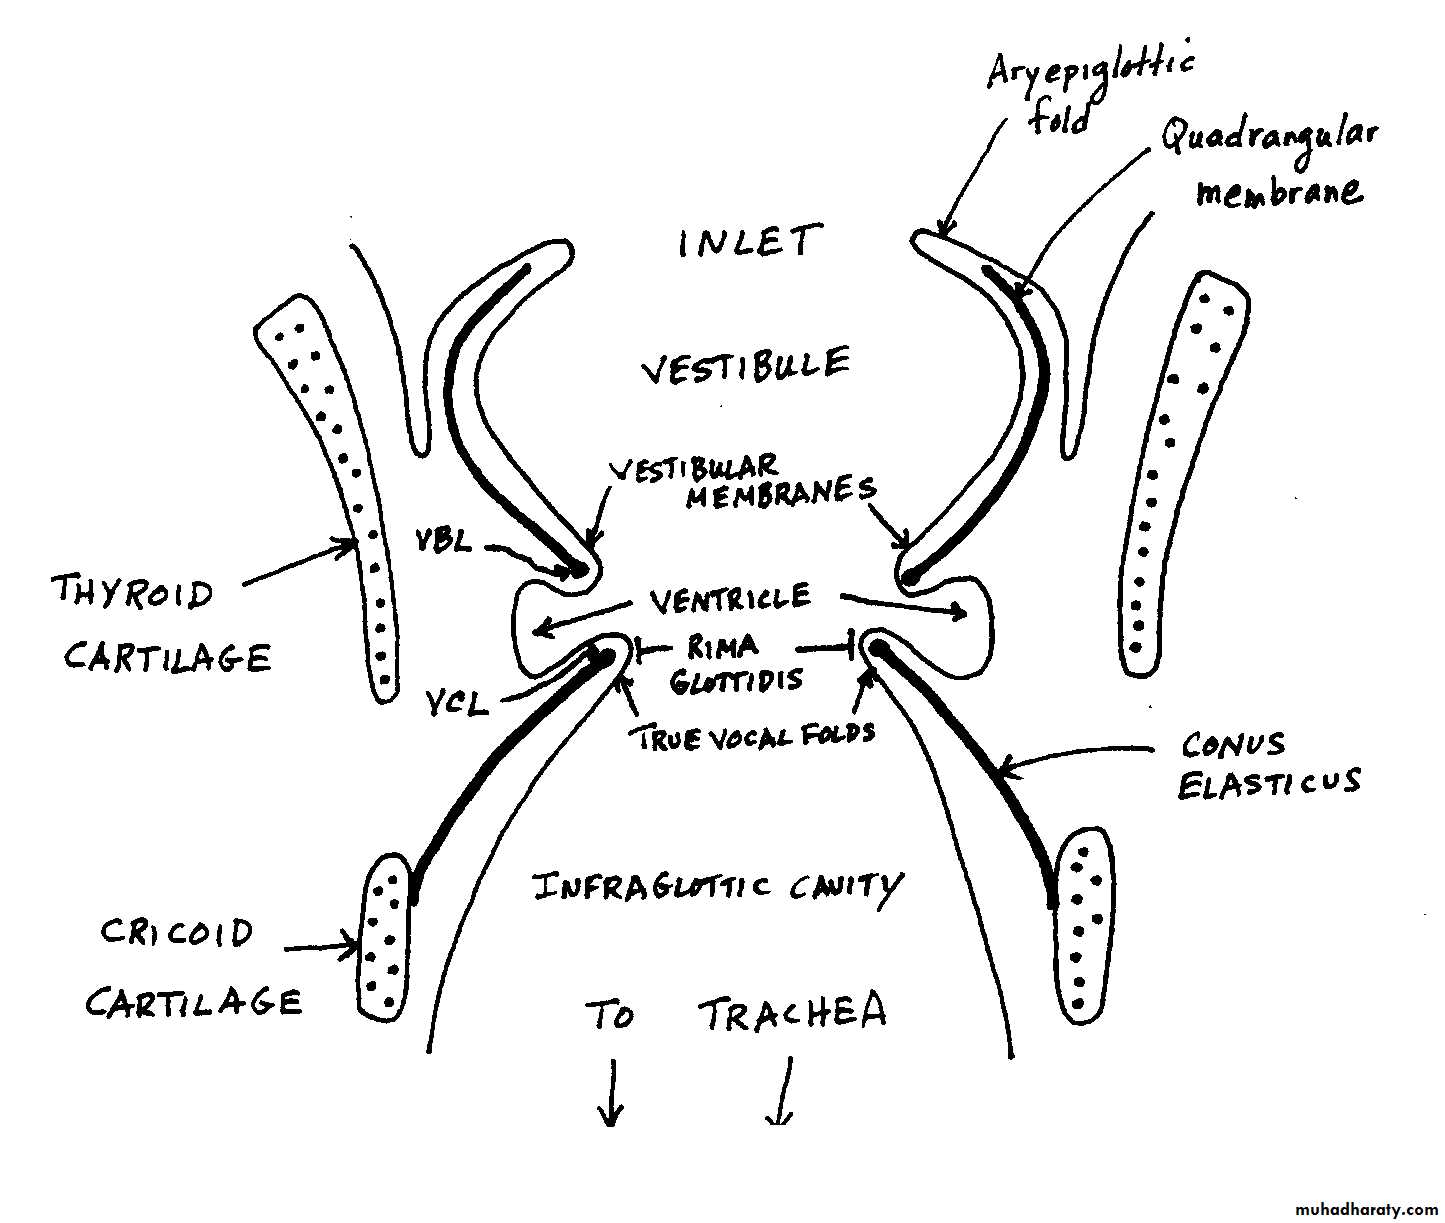 Anatomy of the Larynx pptx - د.عبدالله ربيع الخليلي - Muhadharaty